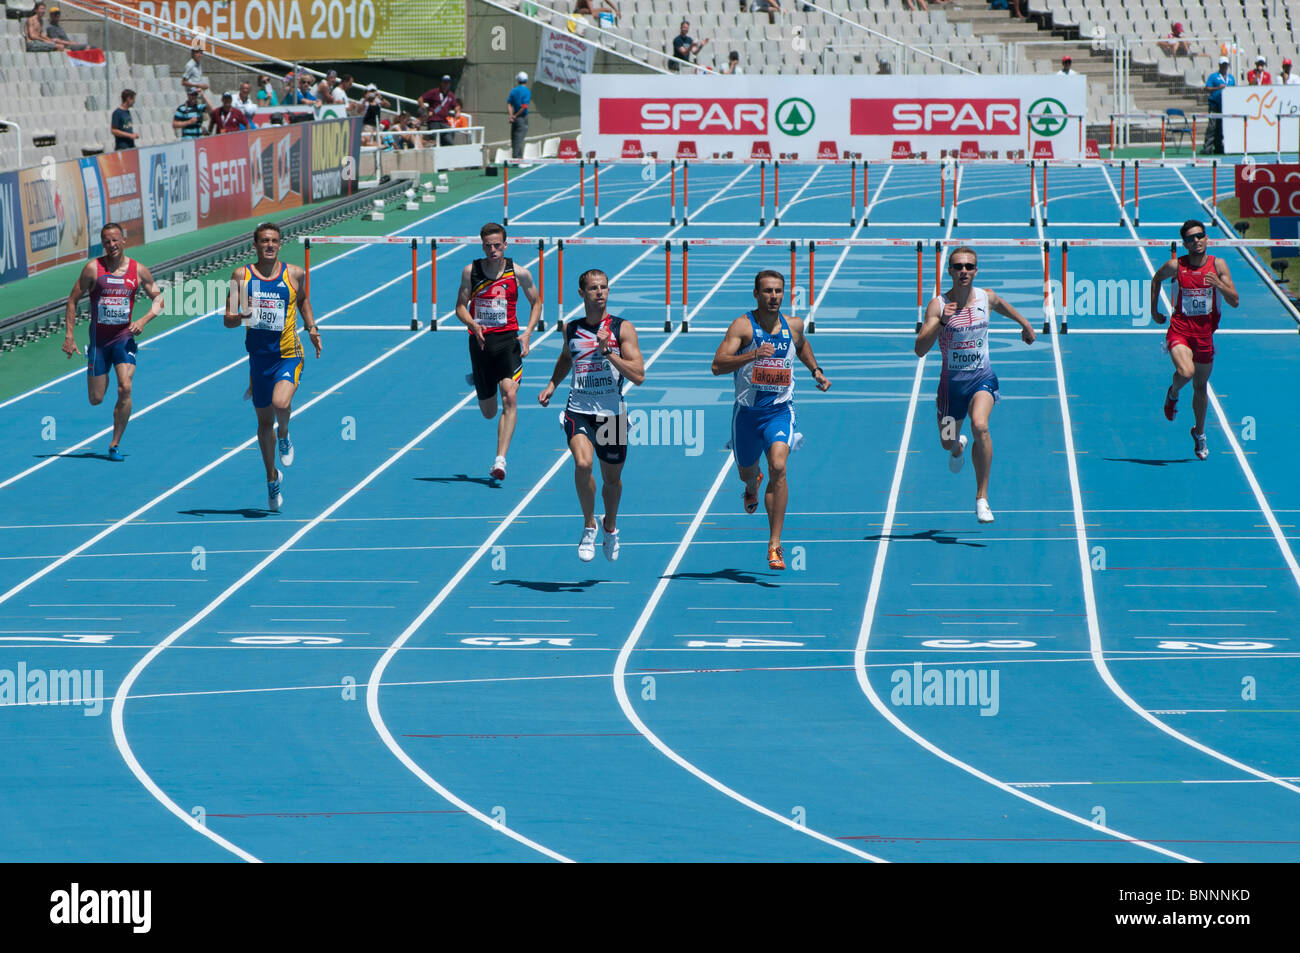 28 juillet 2010 à la Barcelona European Athletics Championships (400m haies hommes) Banque D'Images